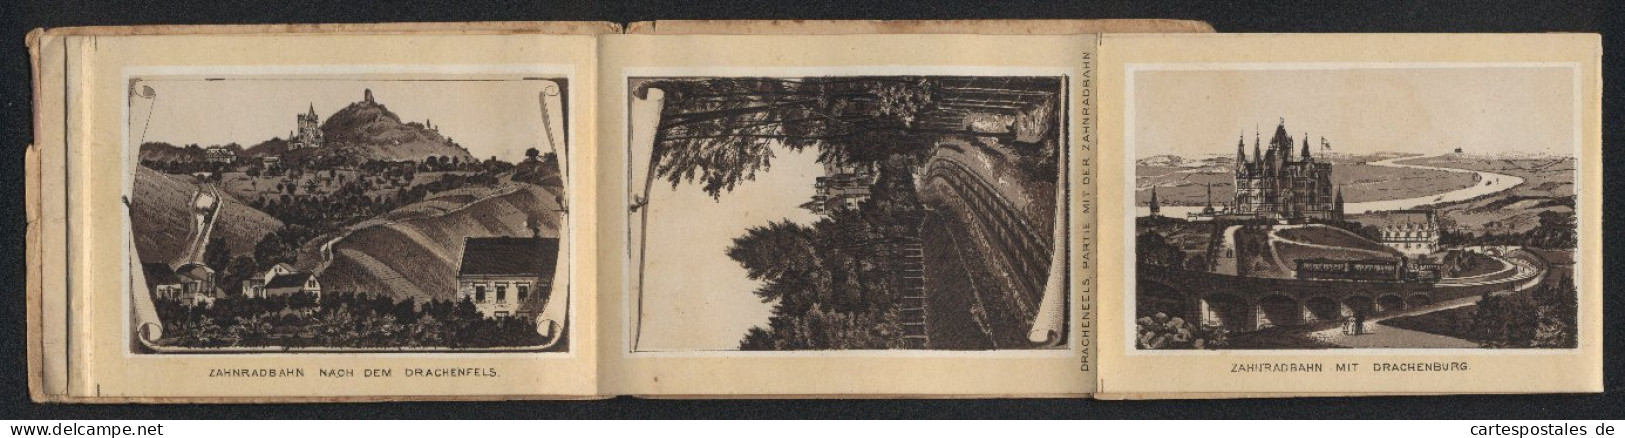 Leporello-Album Drachenfels Mit 12 Lithographie-Ansichten, Zahnradbahn Mit Drachenburg BahnhofRolandseck, Rolandsbogen  - Lithographies